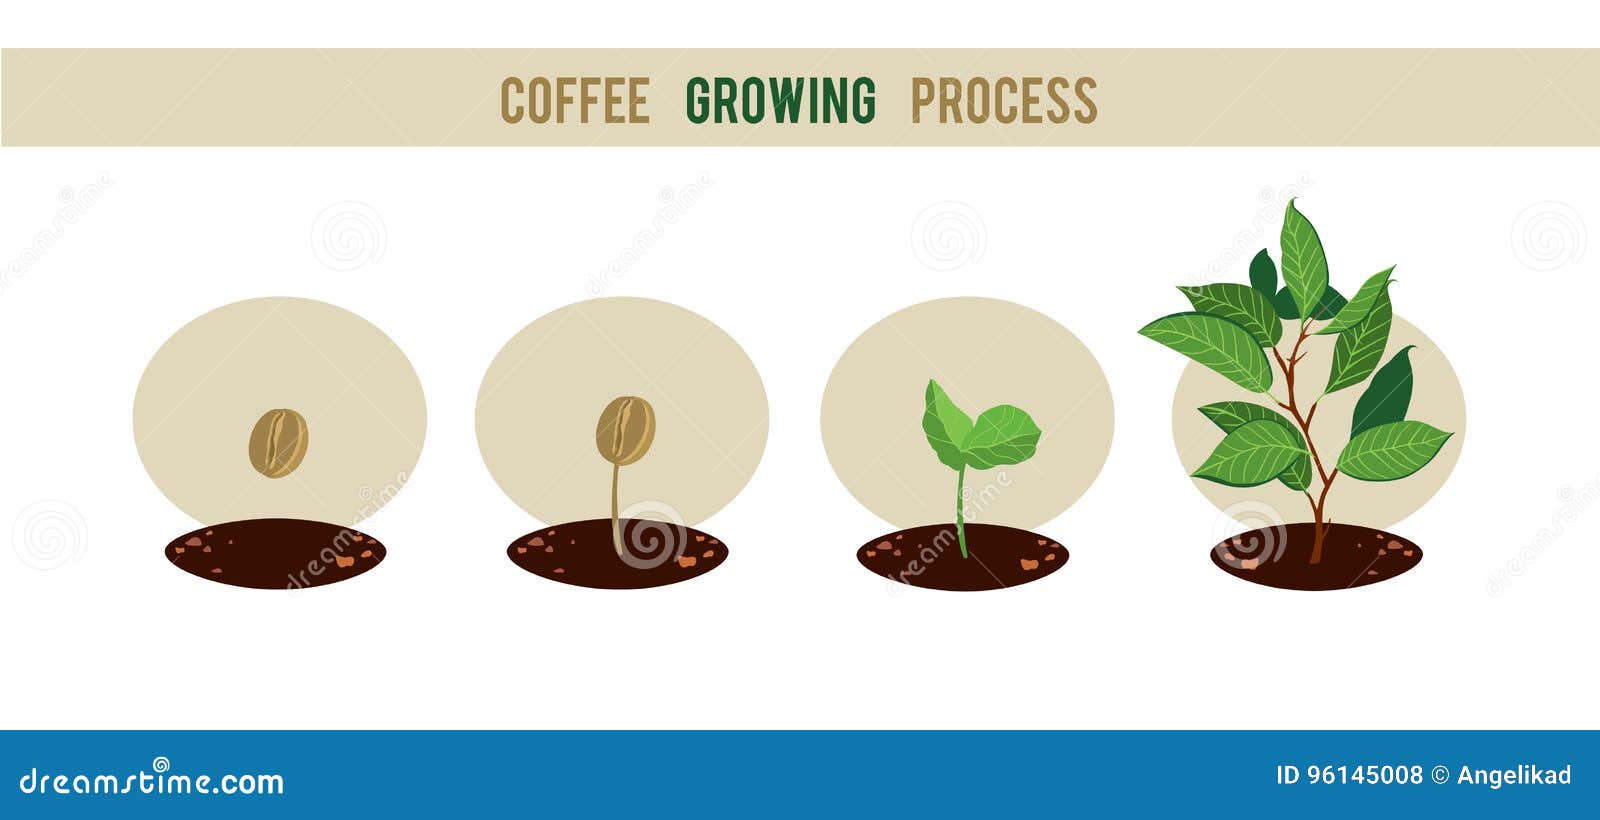 Coffee is grown. Стадии роста кофе. Селекция кофейных деревьев. Схема роста кофейного дерева. Кофе Росток вектор.